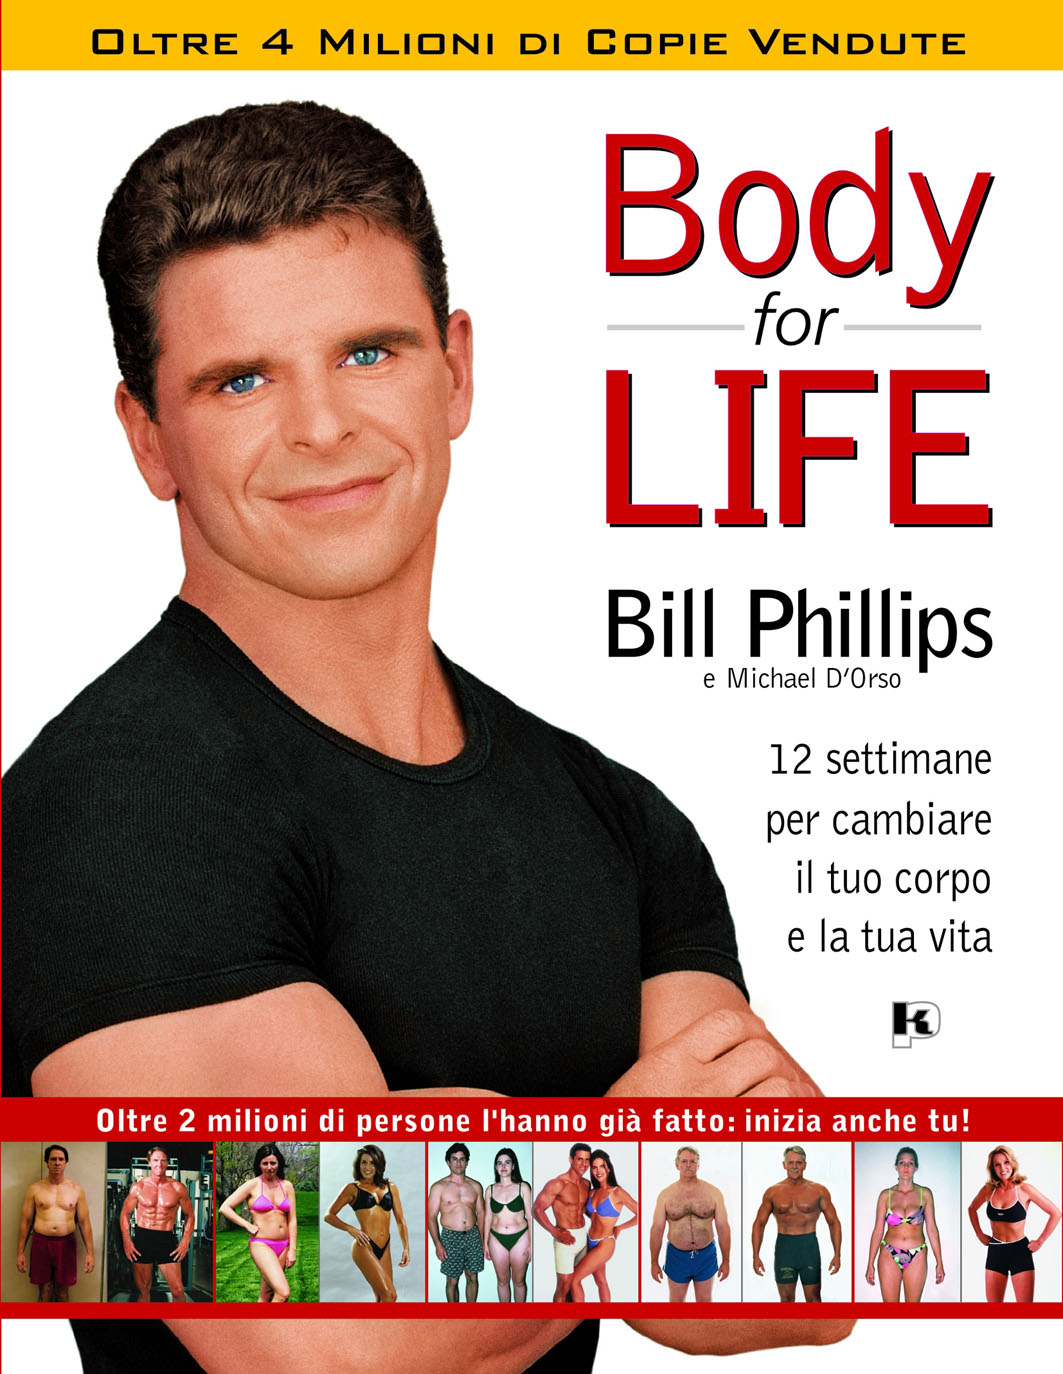 Body-for-LIFE, la guida per ottenere in 12 settimane un corpo perfetto per sempre e senza troppe rinunce